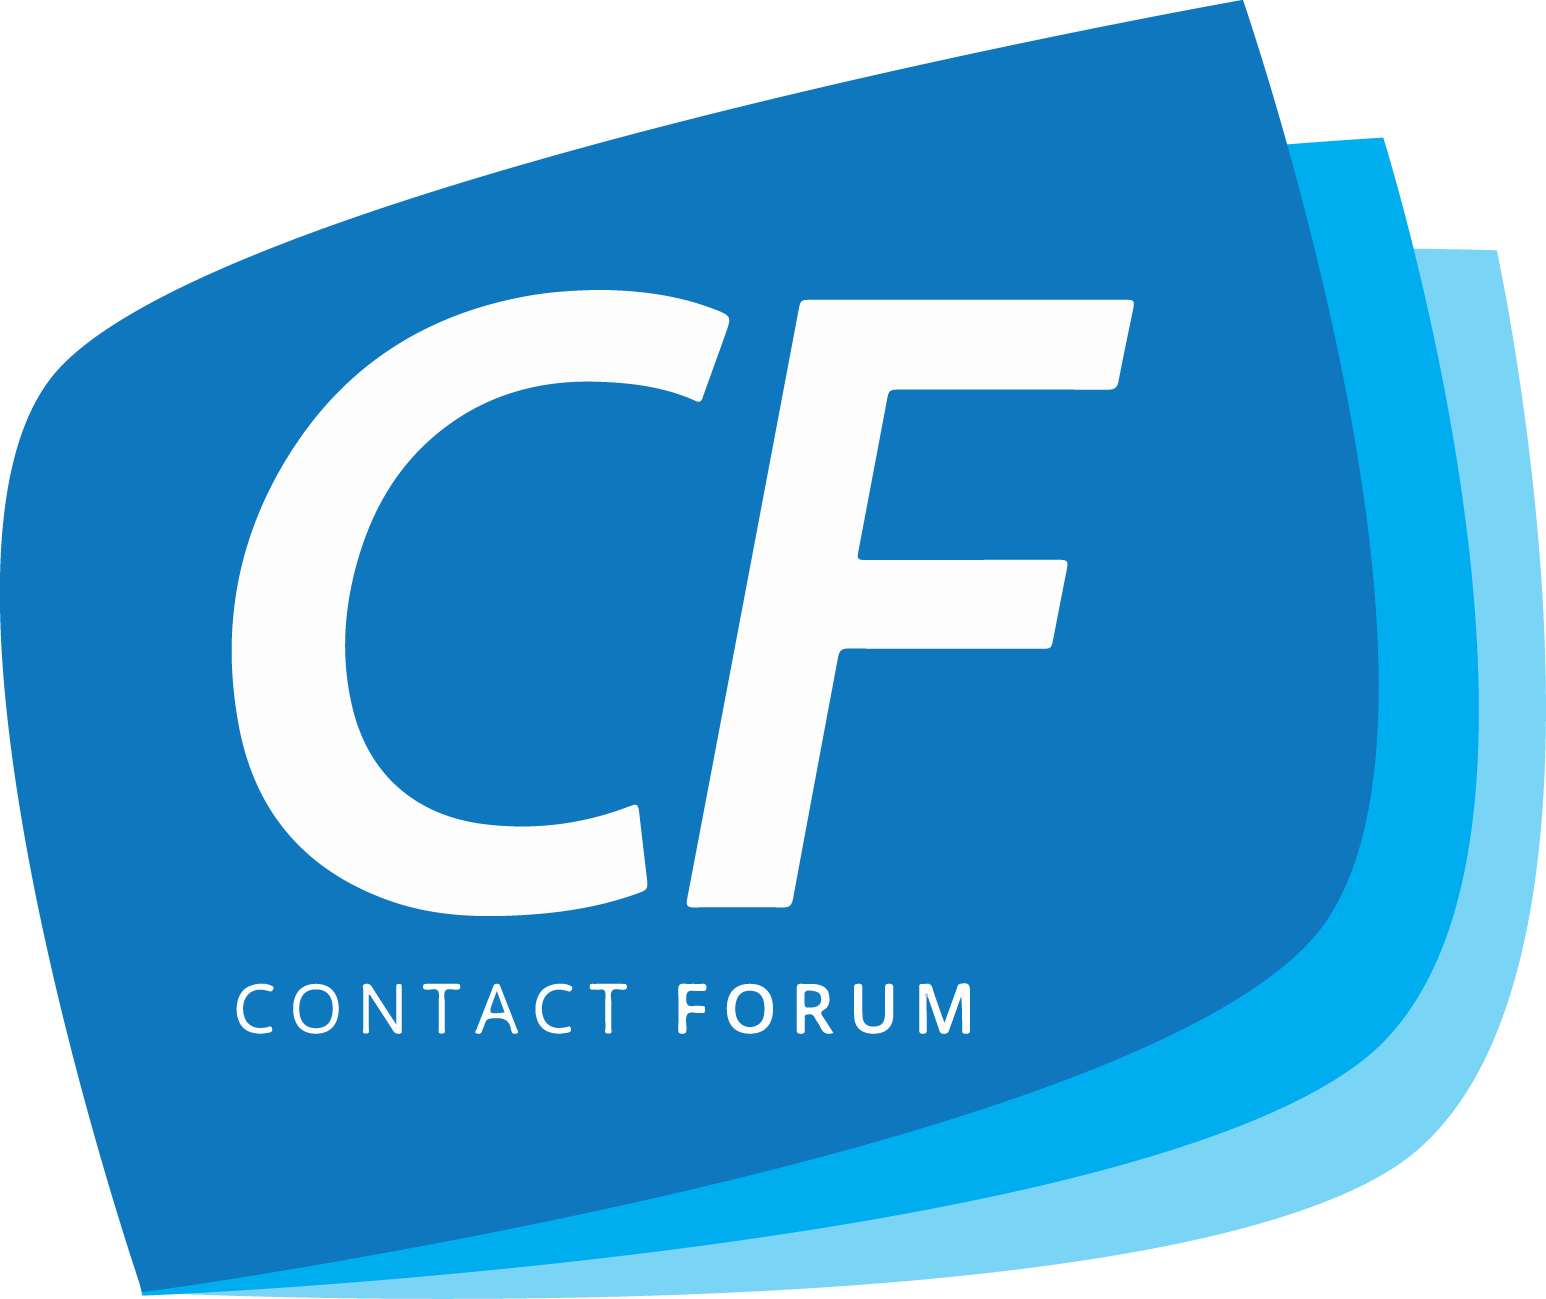 Contact Forum logo